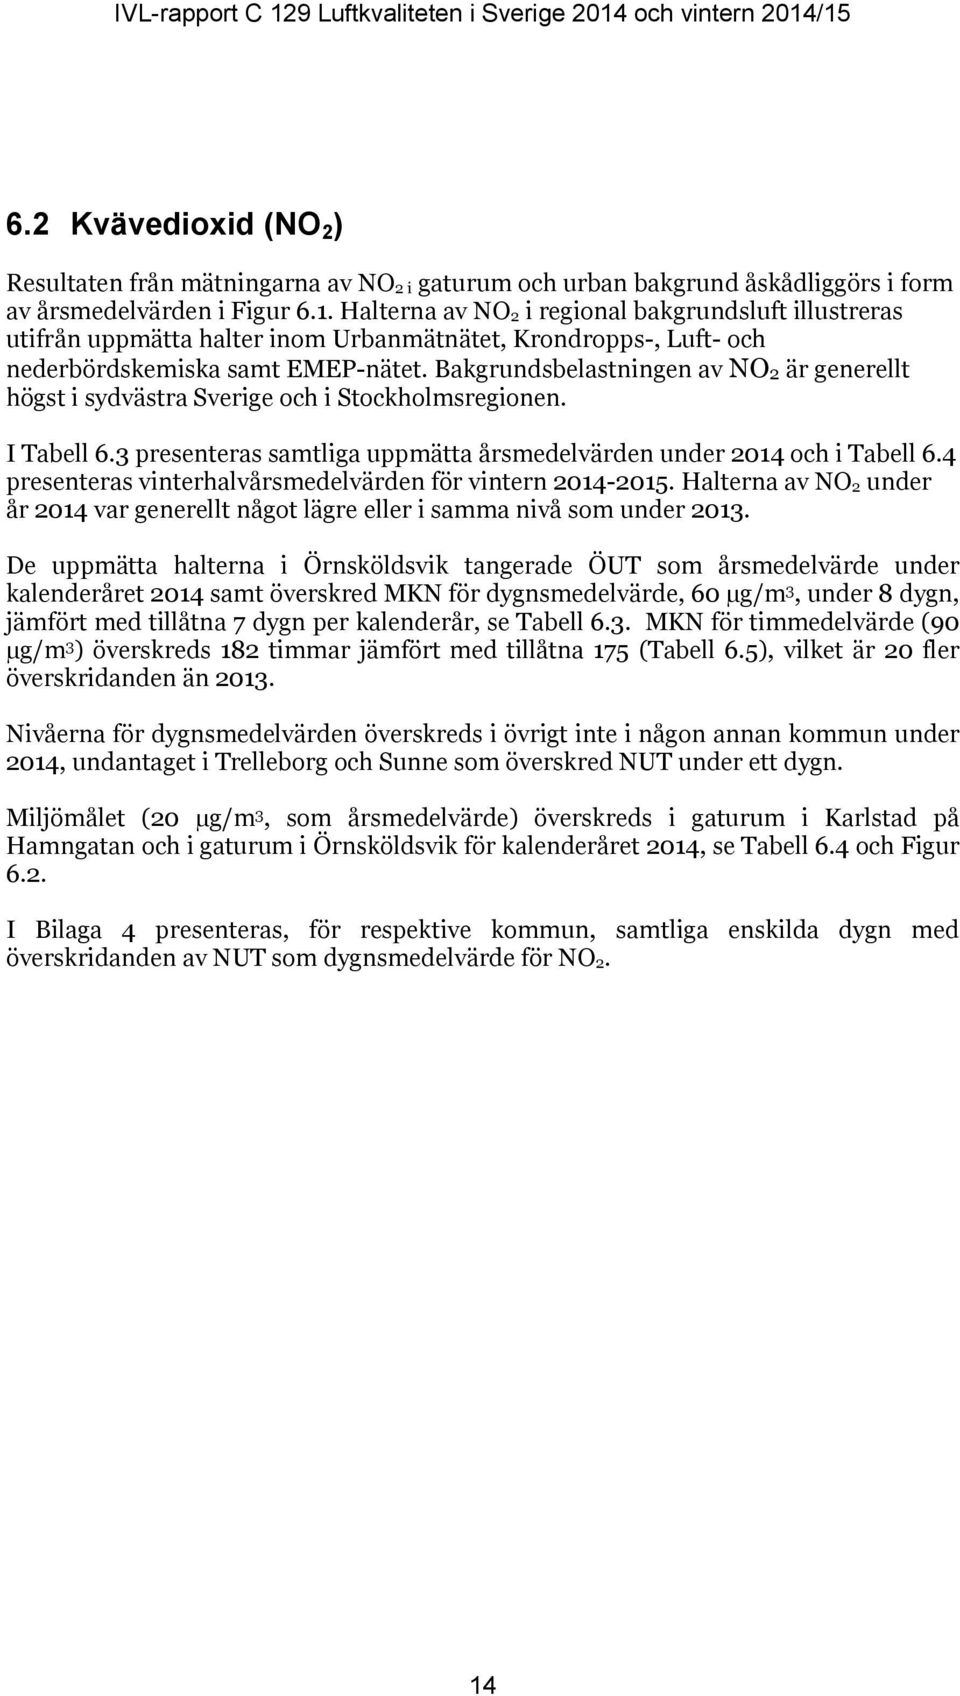 Bakgrundsbelastningen av NO2 är generellt högst i sydvästra Sverige och i Stockholmsregionen. I Tabell 6.3 presenteras samtliga uppmätta årsmedelvärden under 2014 och i Tabell 6.